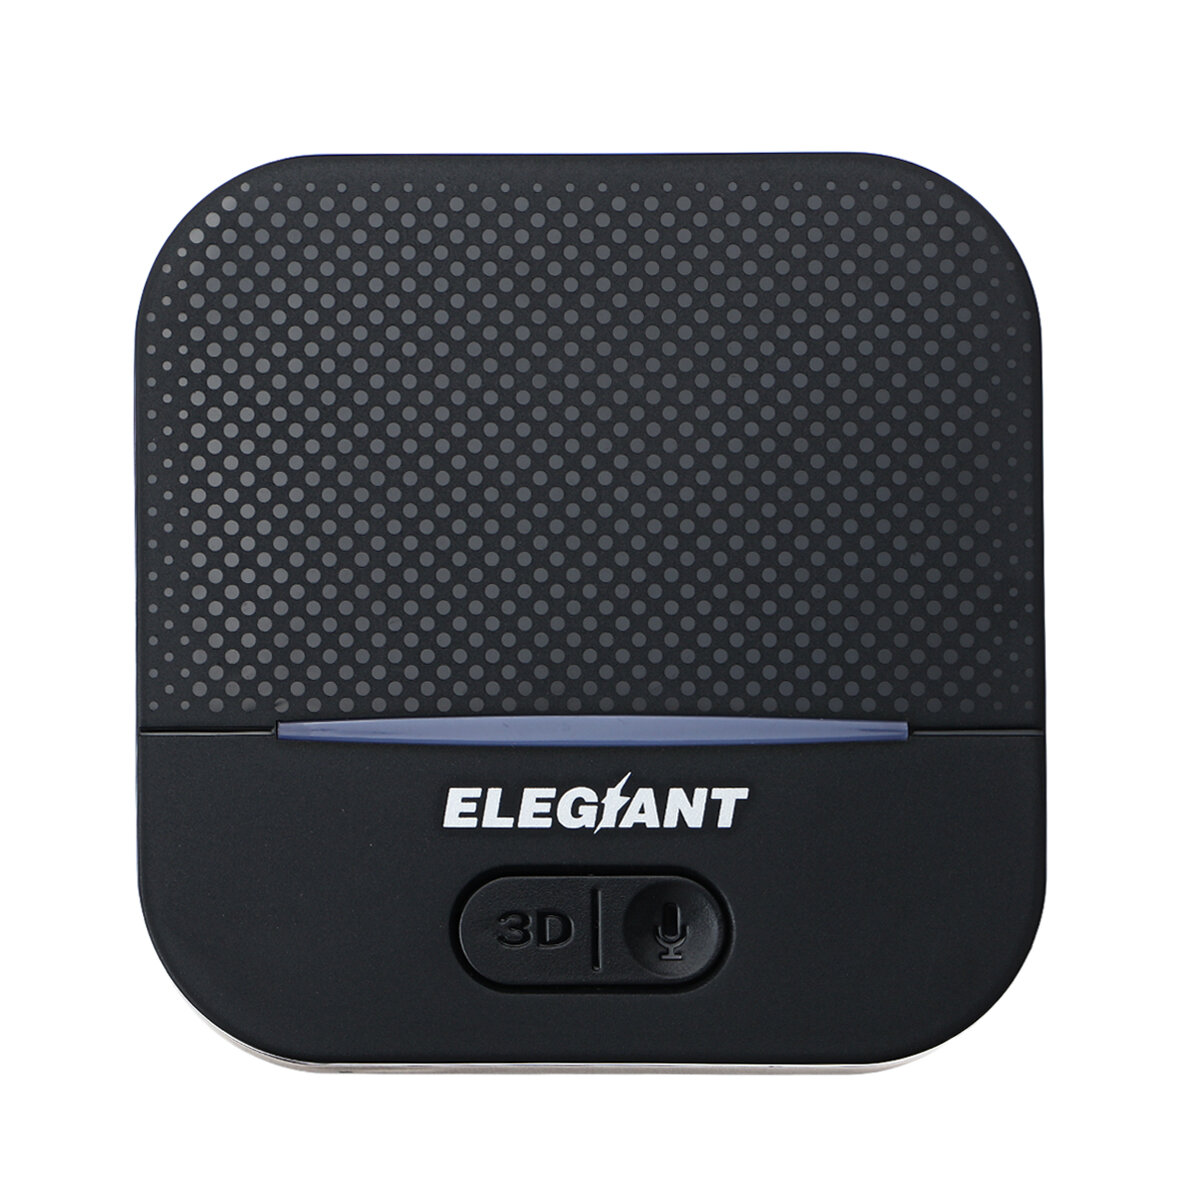 ELEGIANT BTI-036 bluetooth Receiver Wireless z Polski za $14.99 / ~65zł